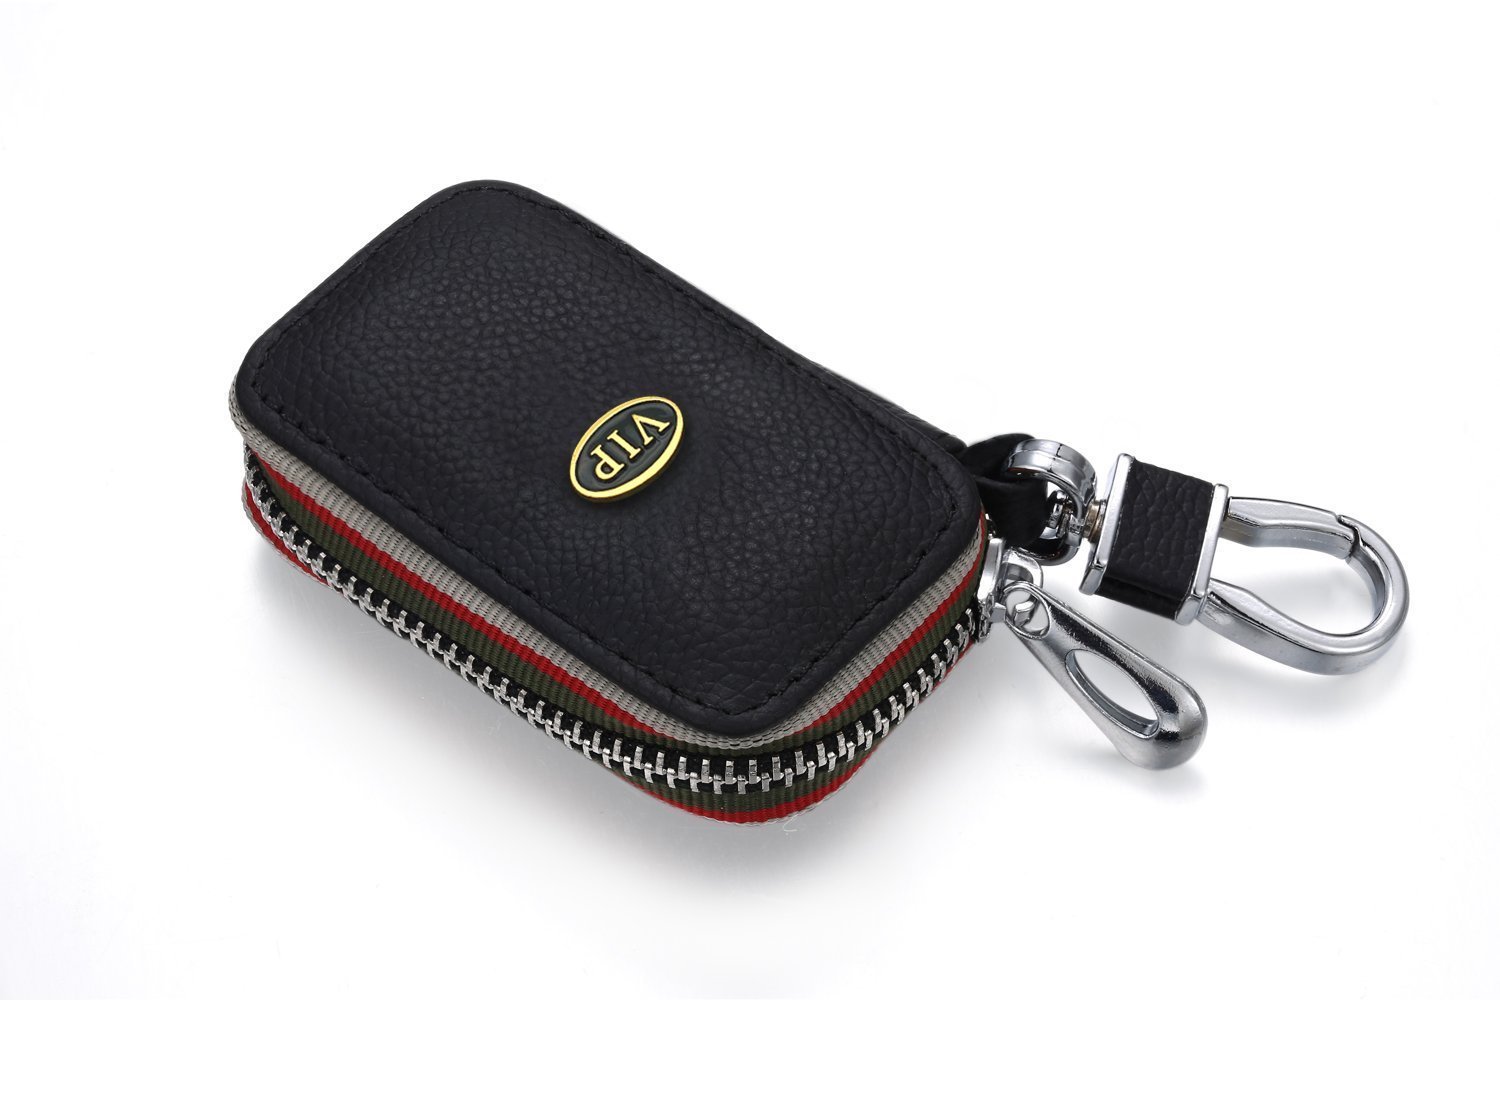 YIKA Echtes Leder Autoschlüssel VIP - Logo Etui Holder Tragbar Auto Schlüssel Tasche KFZ Schlüssel Kette Coin Holder Zipper Case Fernbedienung Wallet Tasche (Schwarz) von Kenddeel